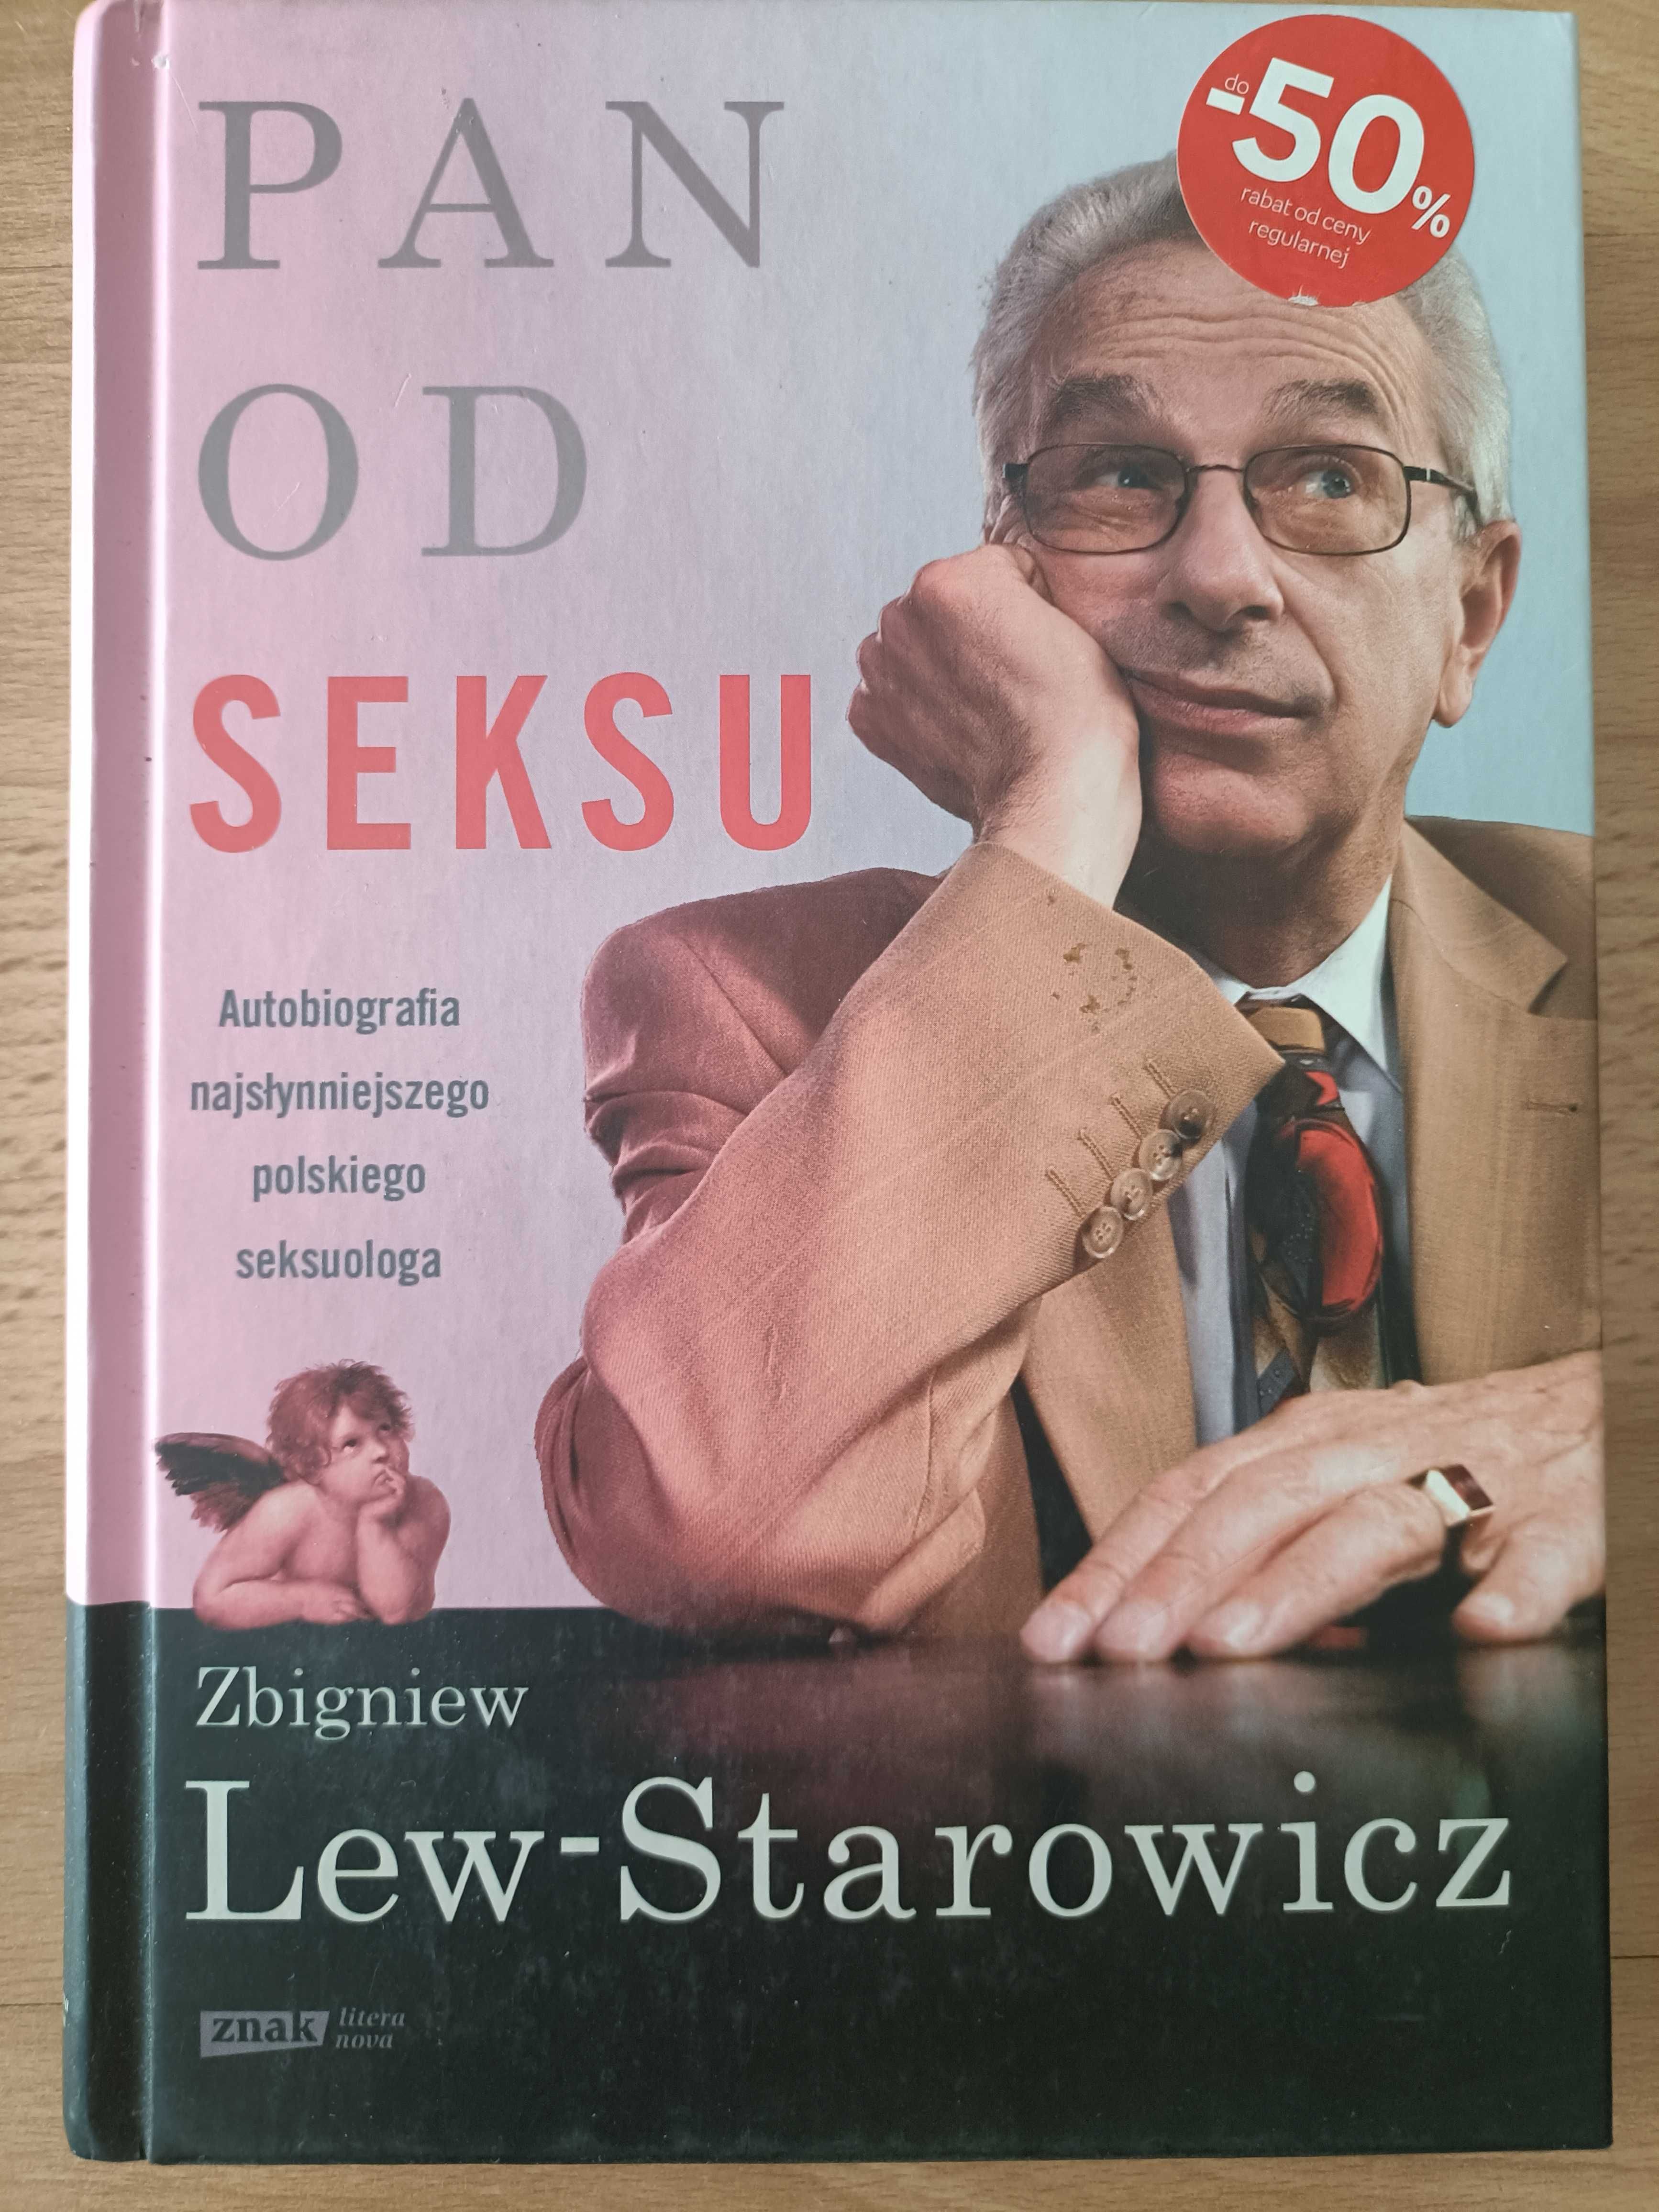 Pan od seksu - Zbigniew Lew Starowicz